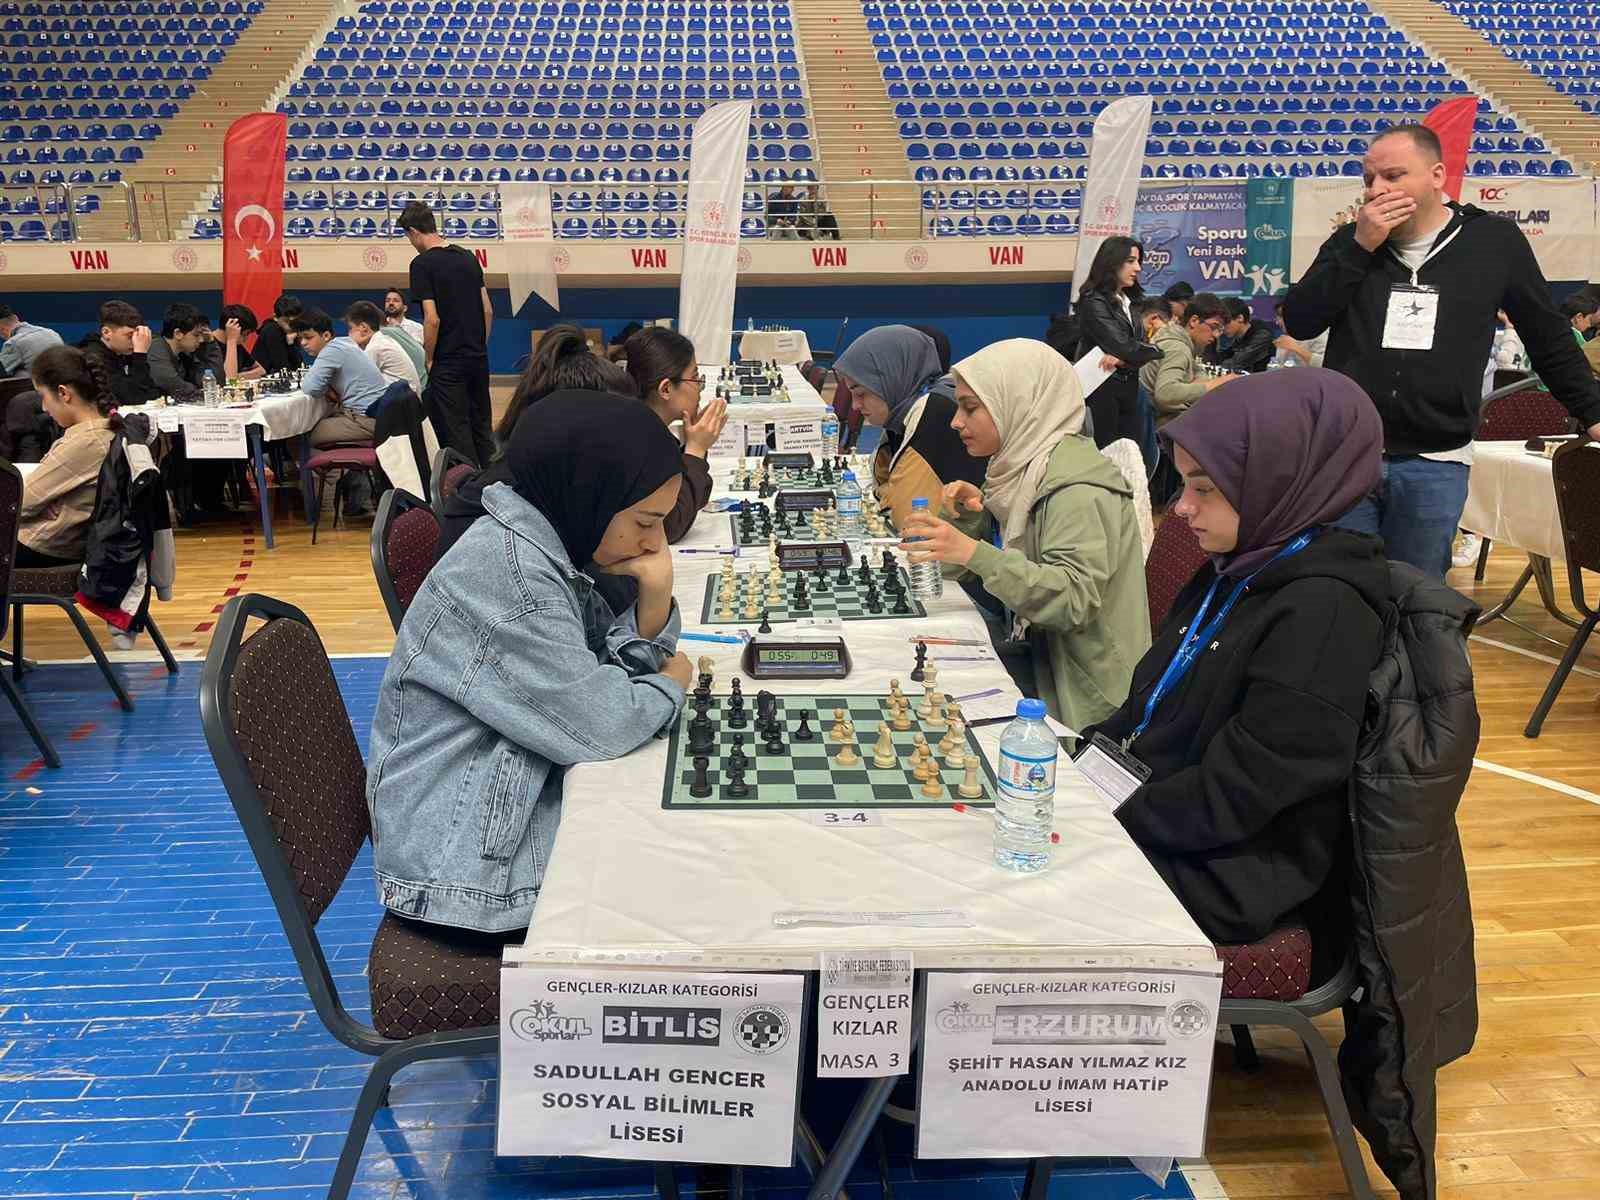 Van’da ödüllü satranç turnuvası son buldu